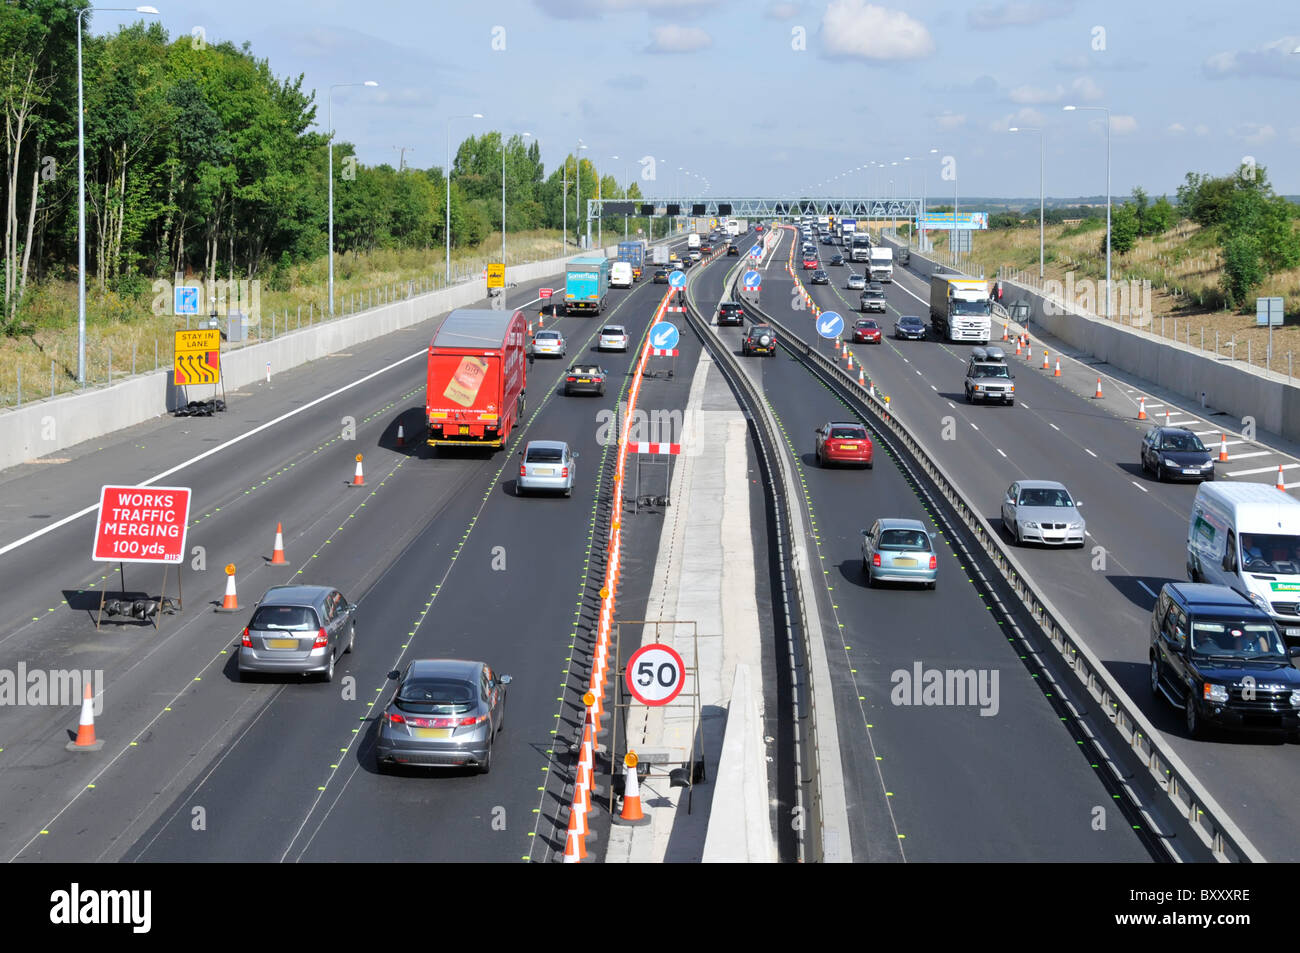 L'autostrada M25 attraversa le corsie contra flow in lavori stradali che si estendono a quattro corsie il progetto di ingegneria civile si avvicina al completamento della campagna di Essex Inghilterra Regno Unito Foto Stock